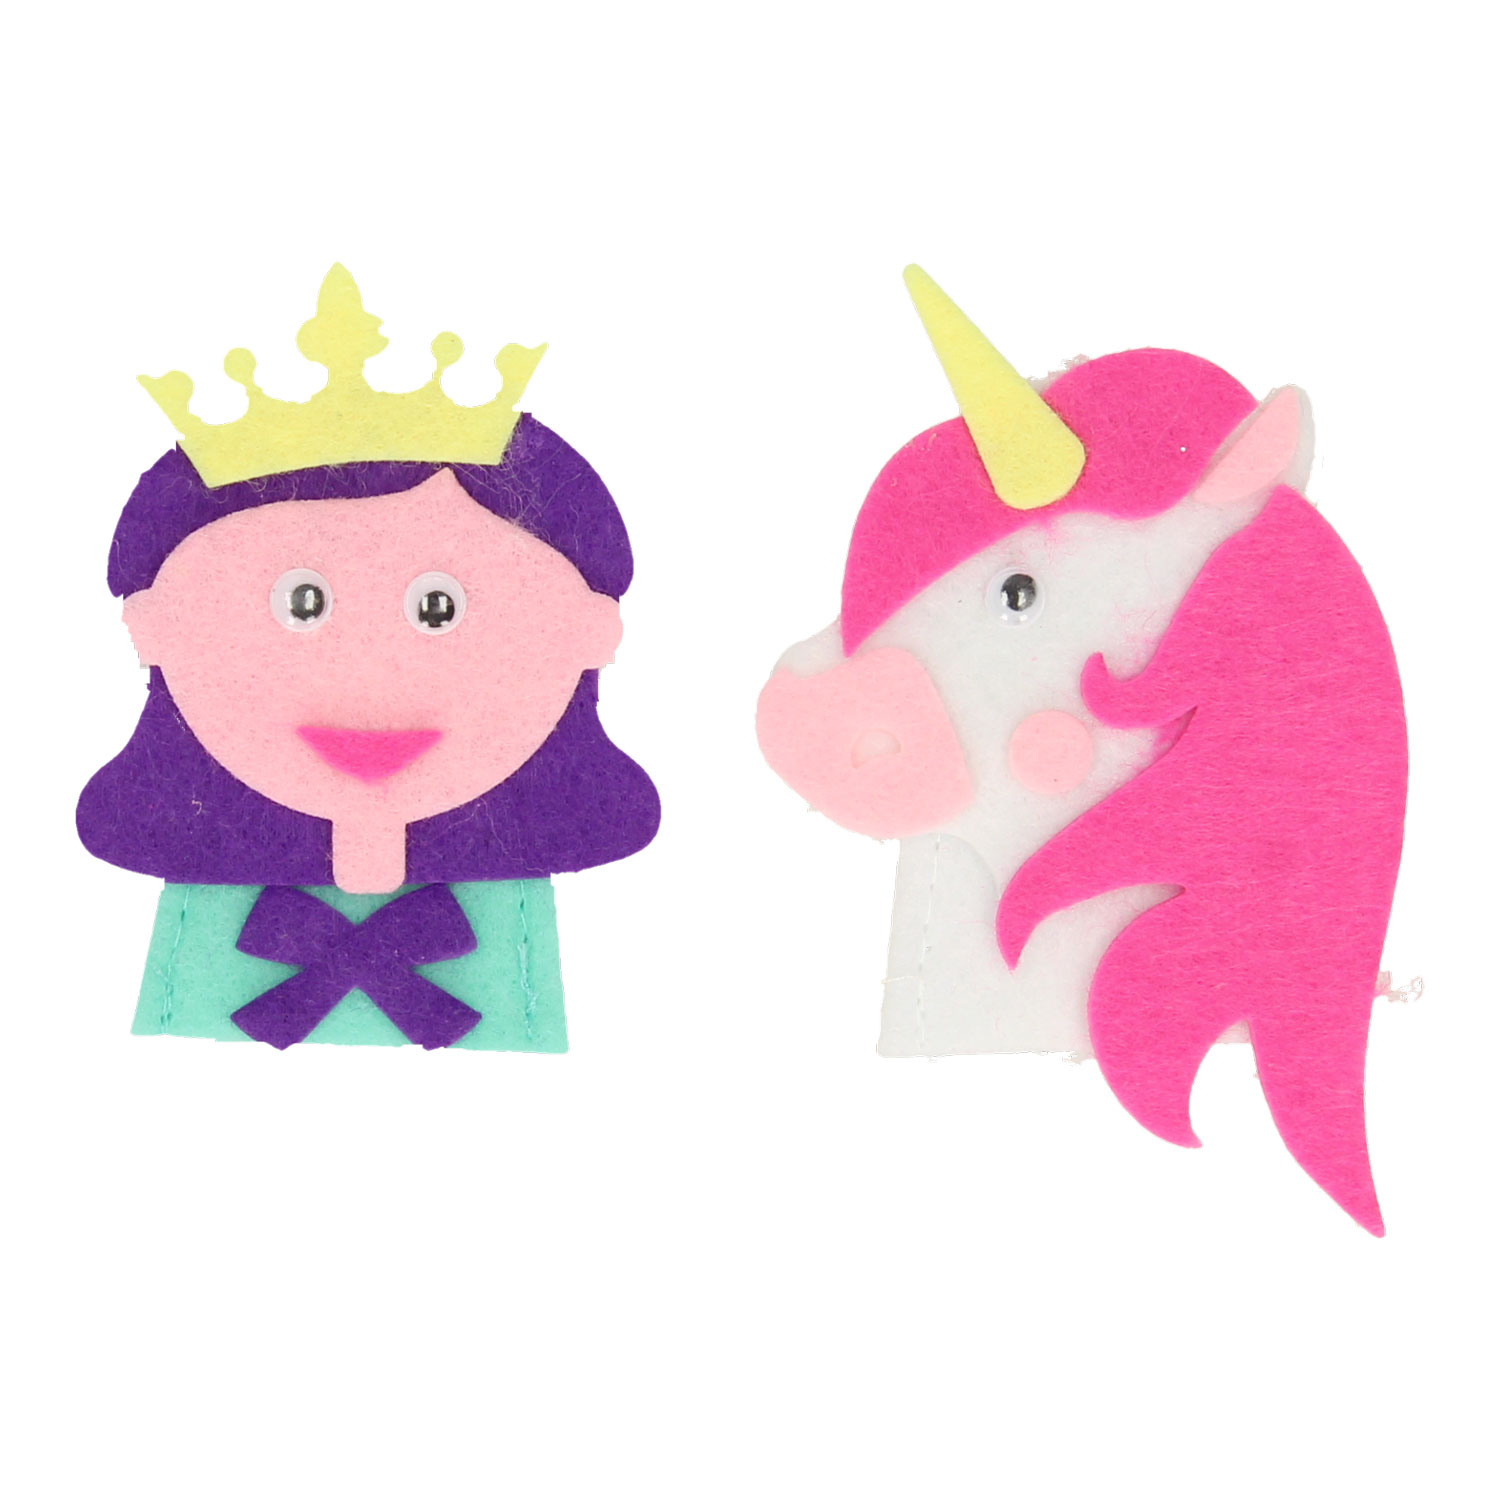 Bastelset zur Herstellung von Fingerpuppen – Prinzessin und Ritter